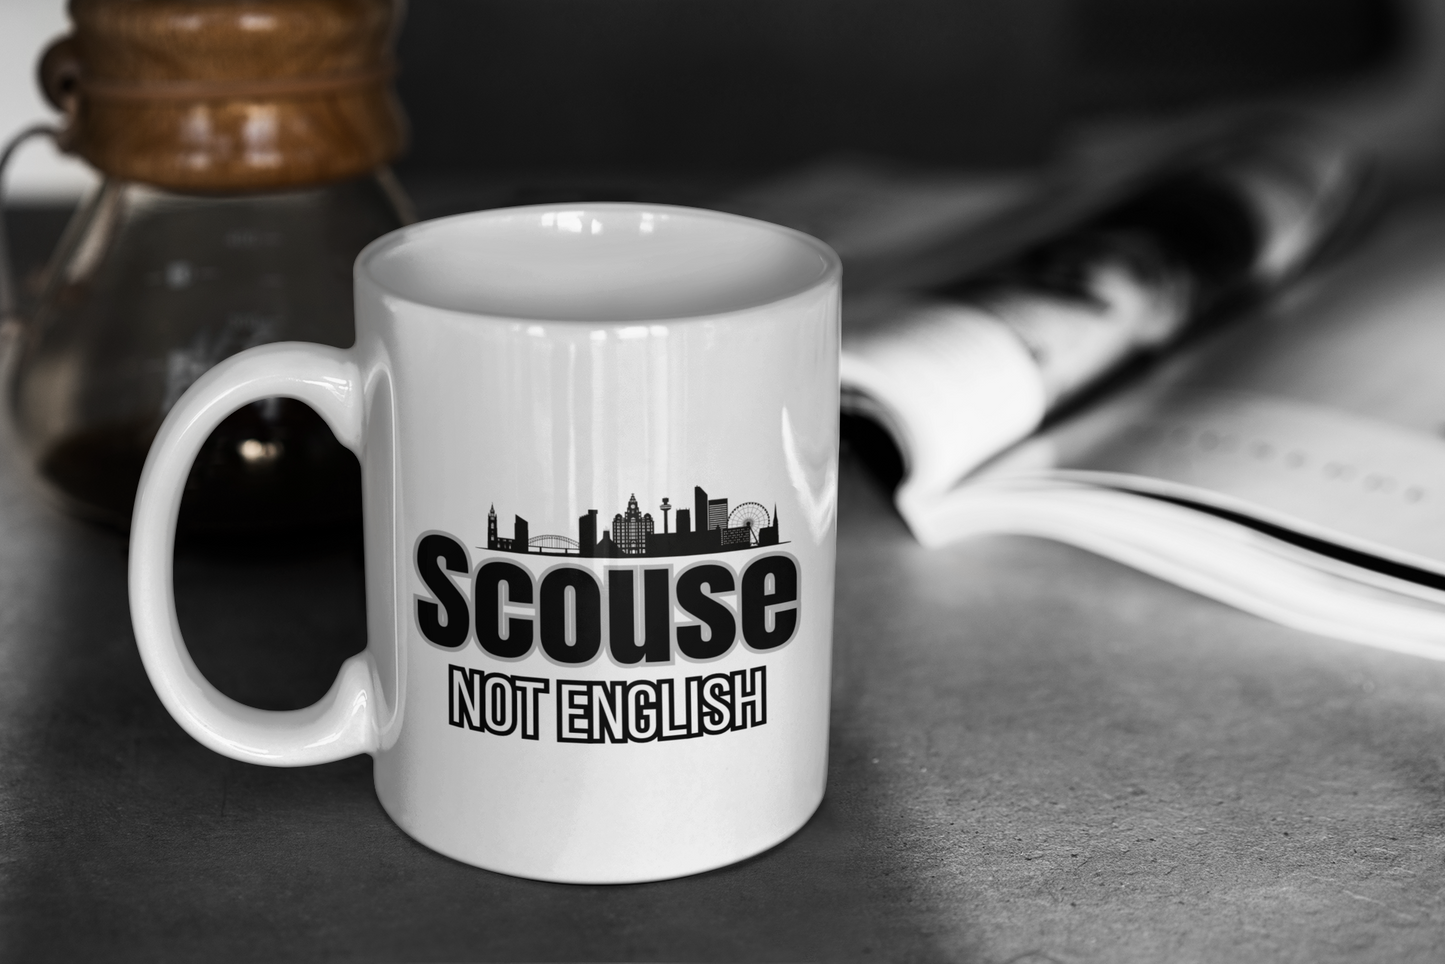 Scouse Not English Mug